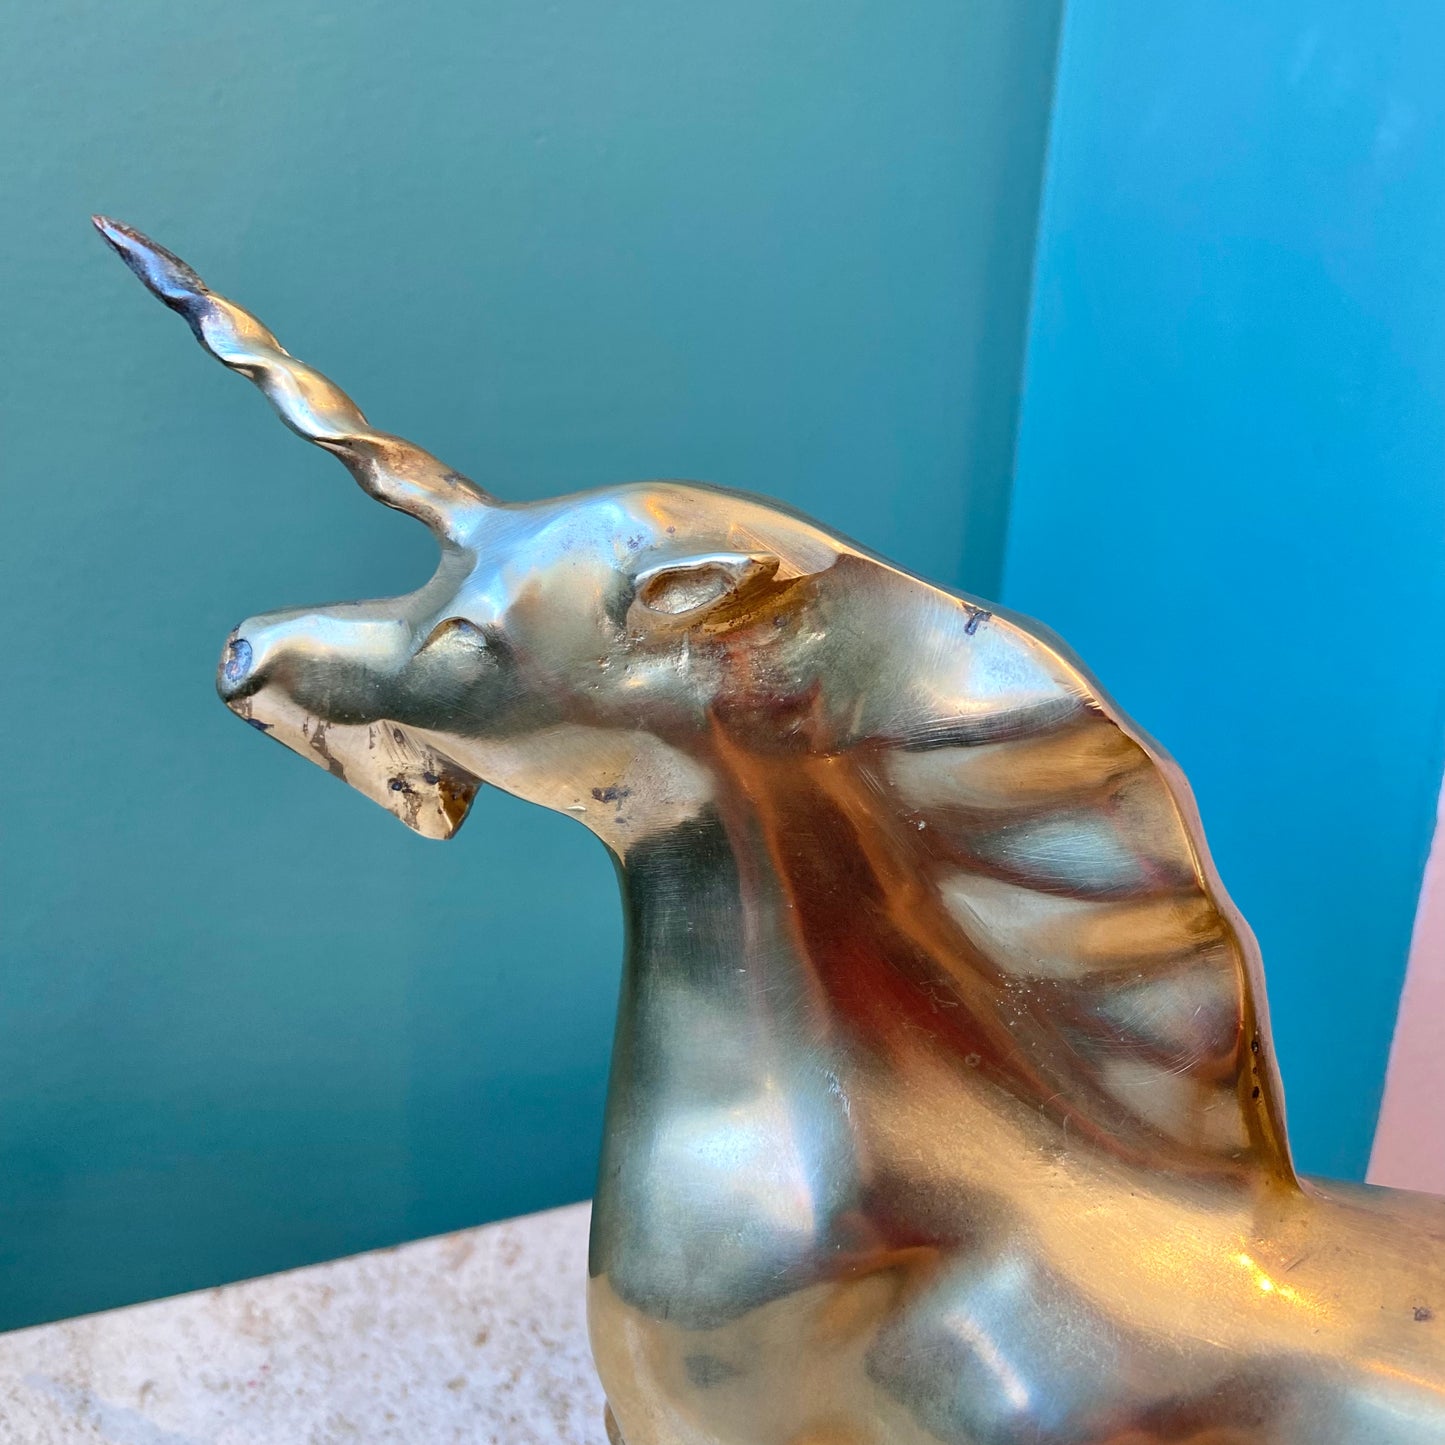 Vintage Brass Running Unicorn Figurine